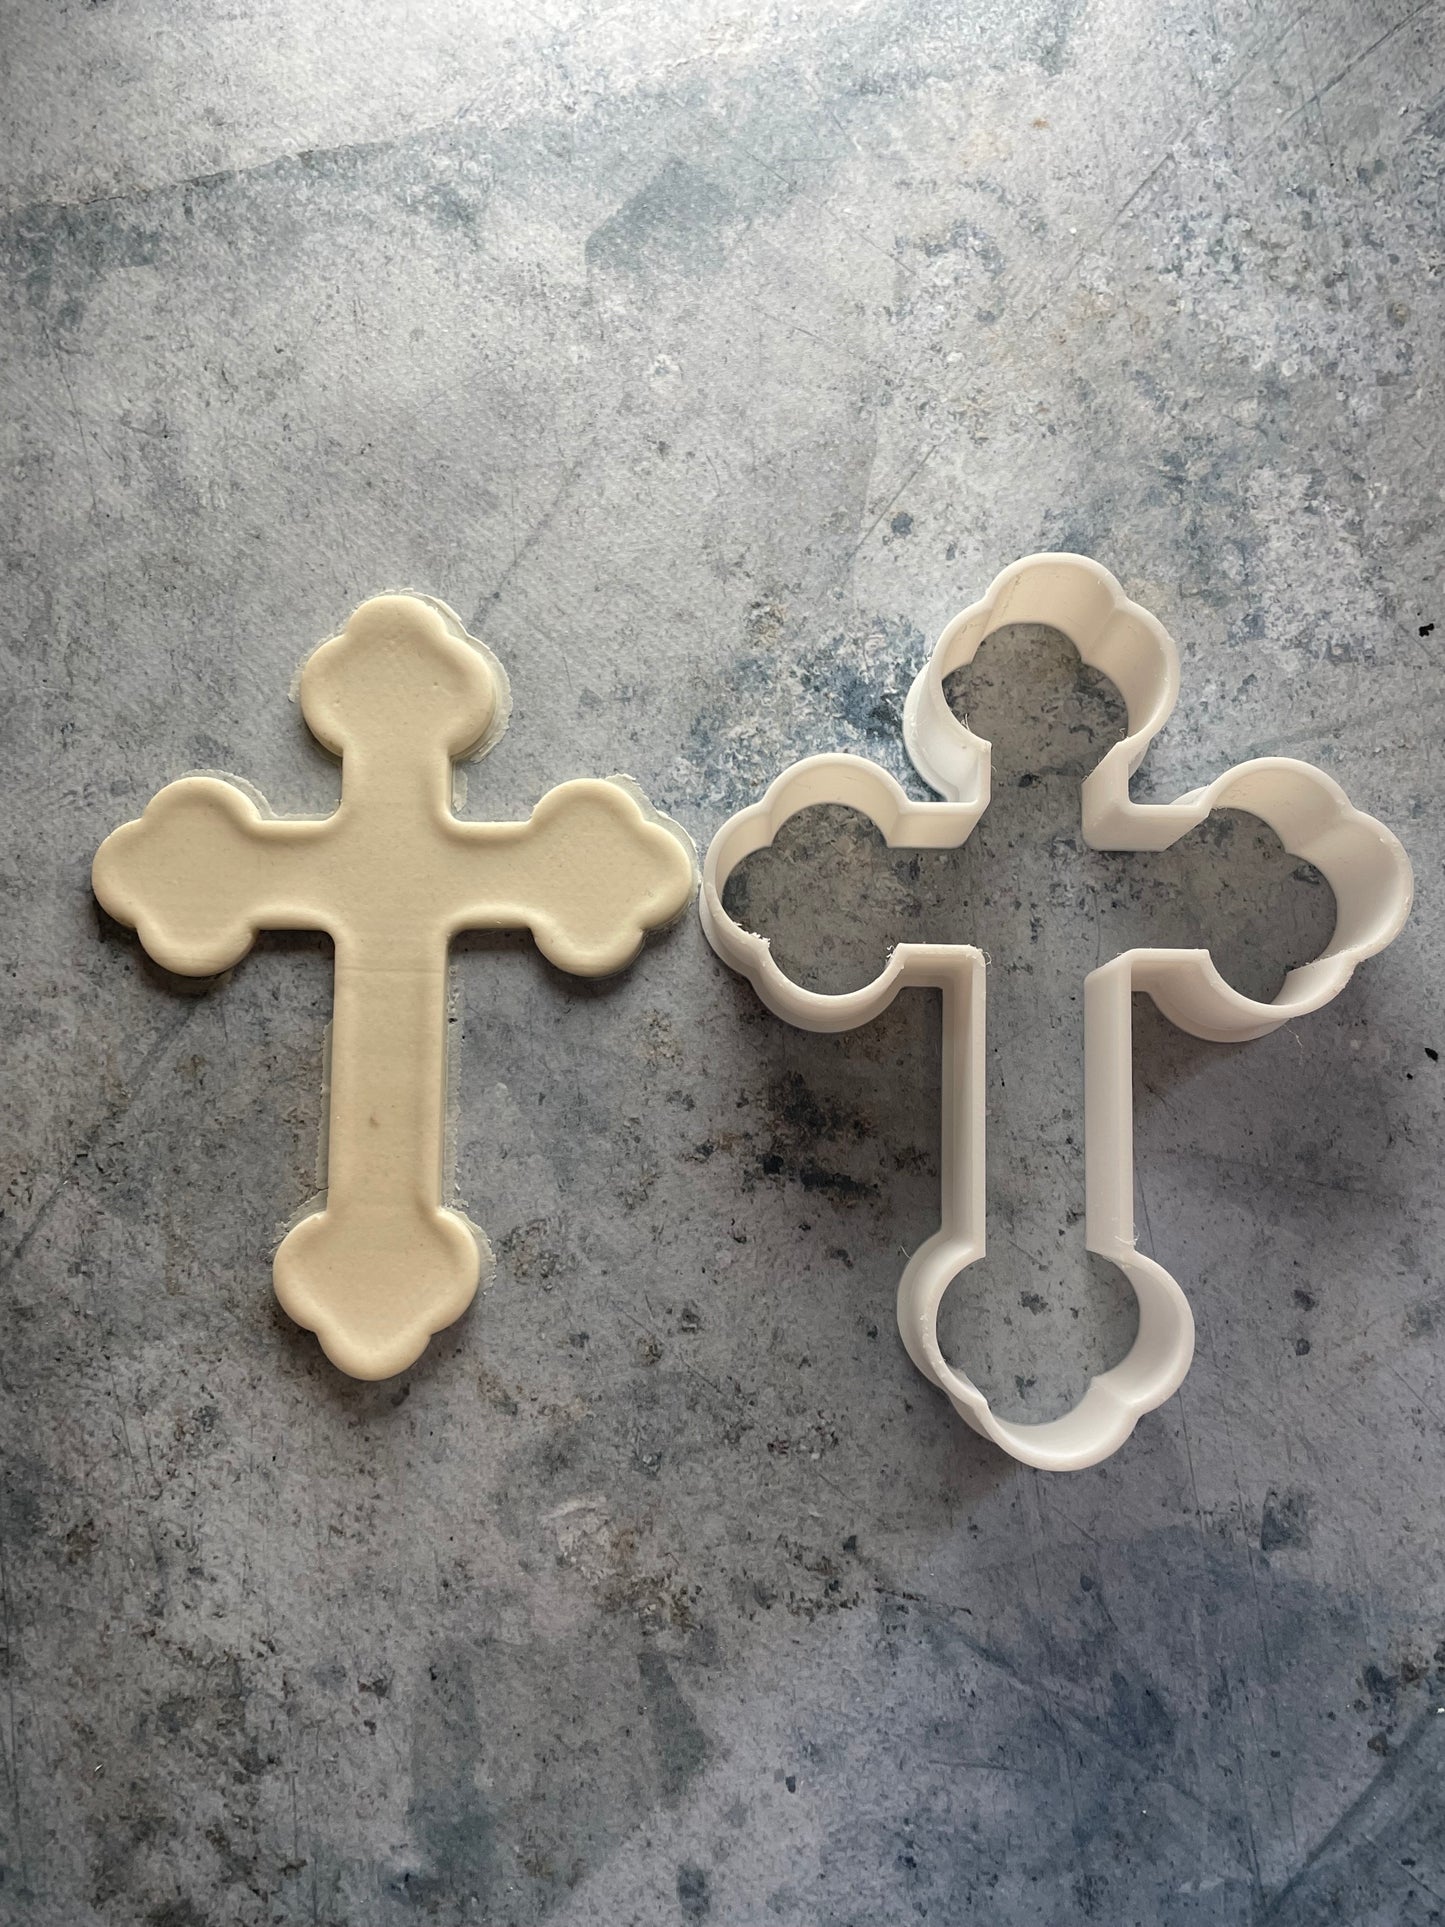 Emporte-pièce - Croix catholique XL-  pâte à sucre, pâte à modeler-Décoration gâteau-Fait maison-France 3D